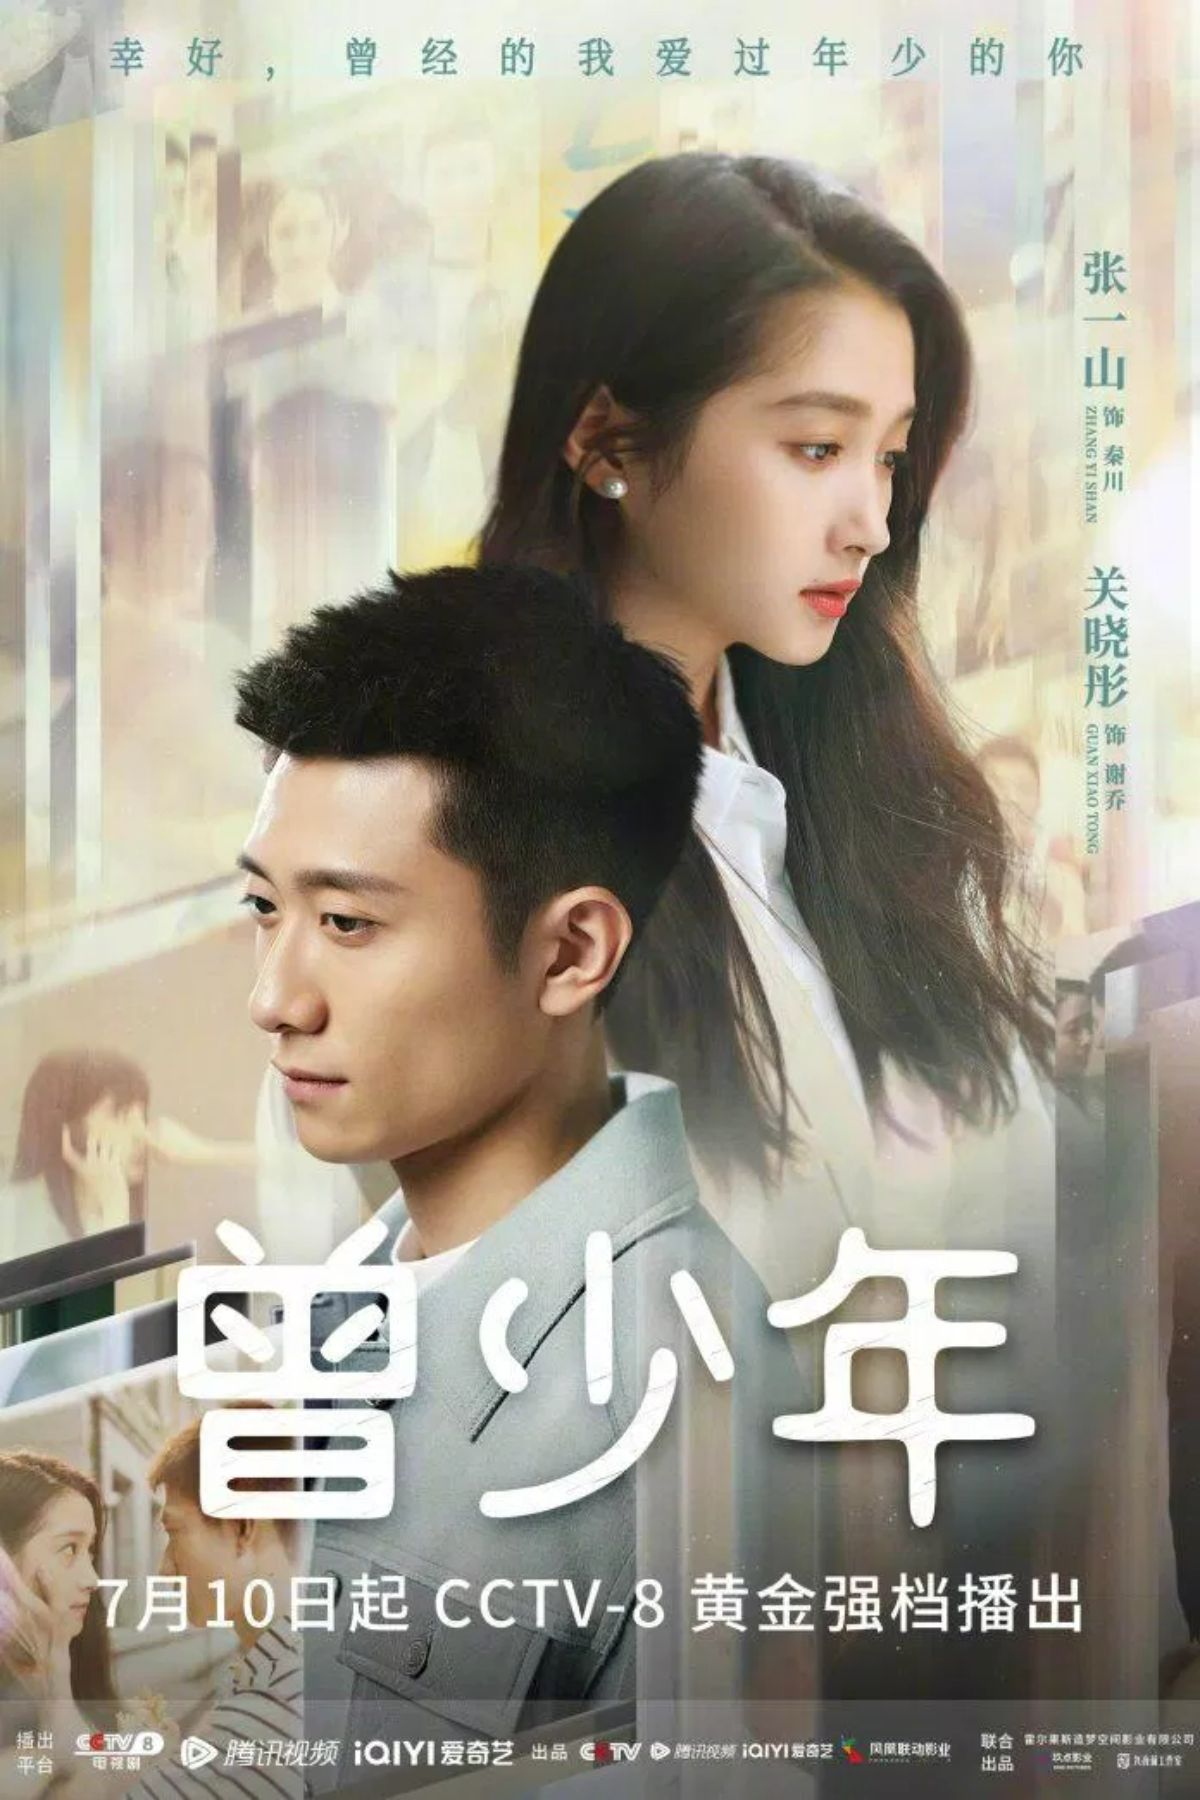 Bộ phim xoay quanh câu chuyện của 2 nhân vật chính là Tần Xuyên (Trương Nhất Sơn) và Tạ Kiều (Quan Hiểu Đồng) - cặp “thanh mai trúc mã” cùng nhau lớn lên ở con ngõ nhỏ Đăng Hoa